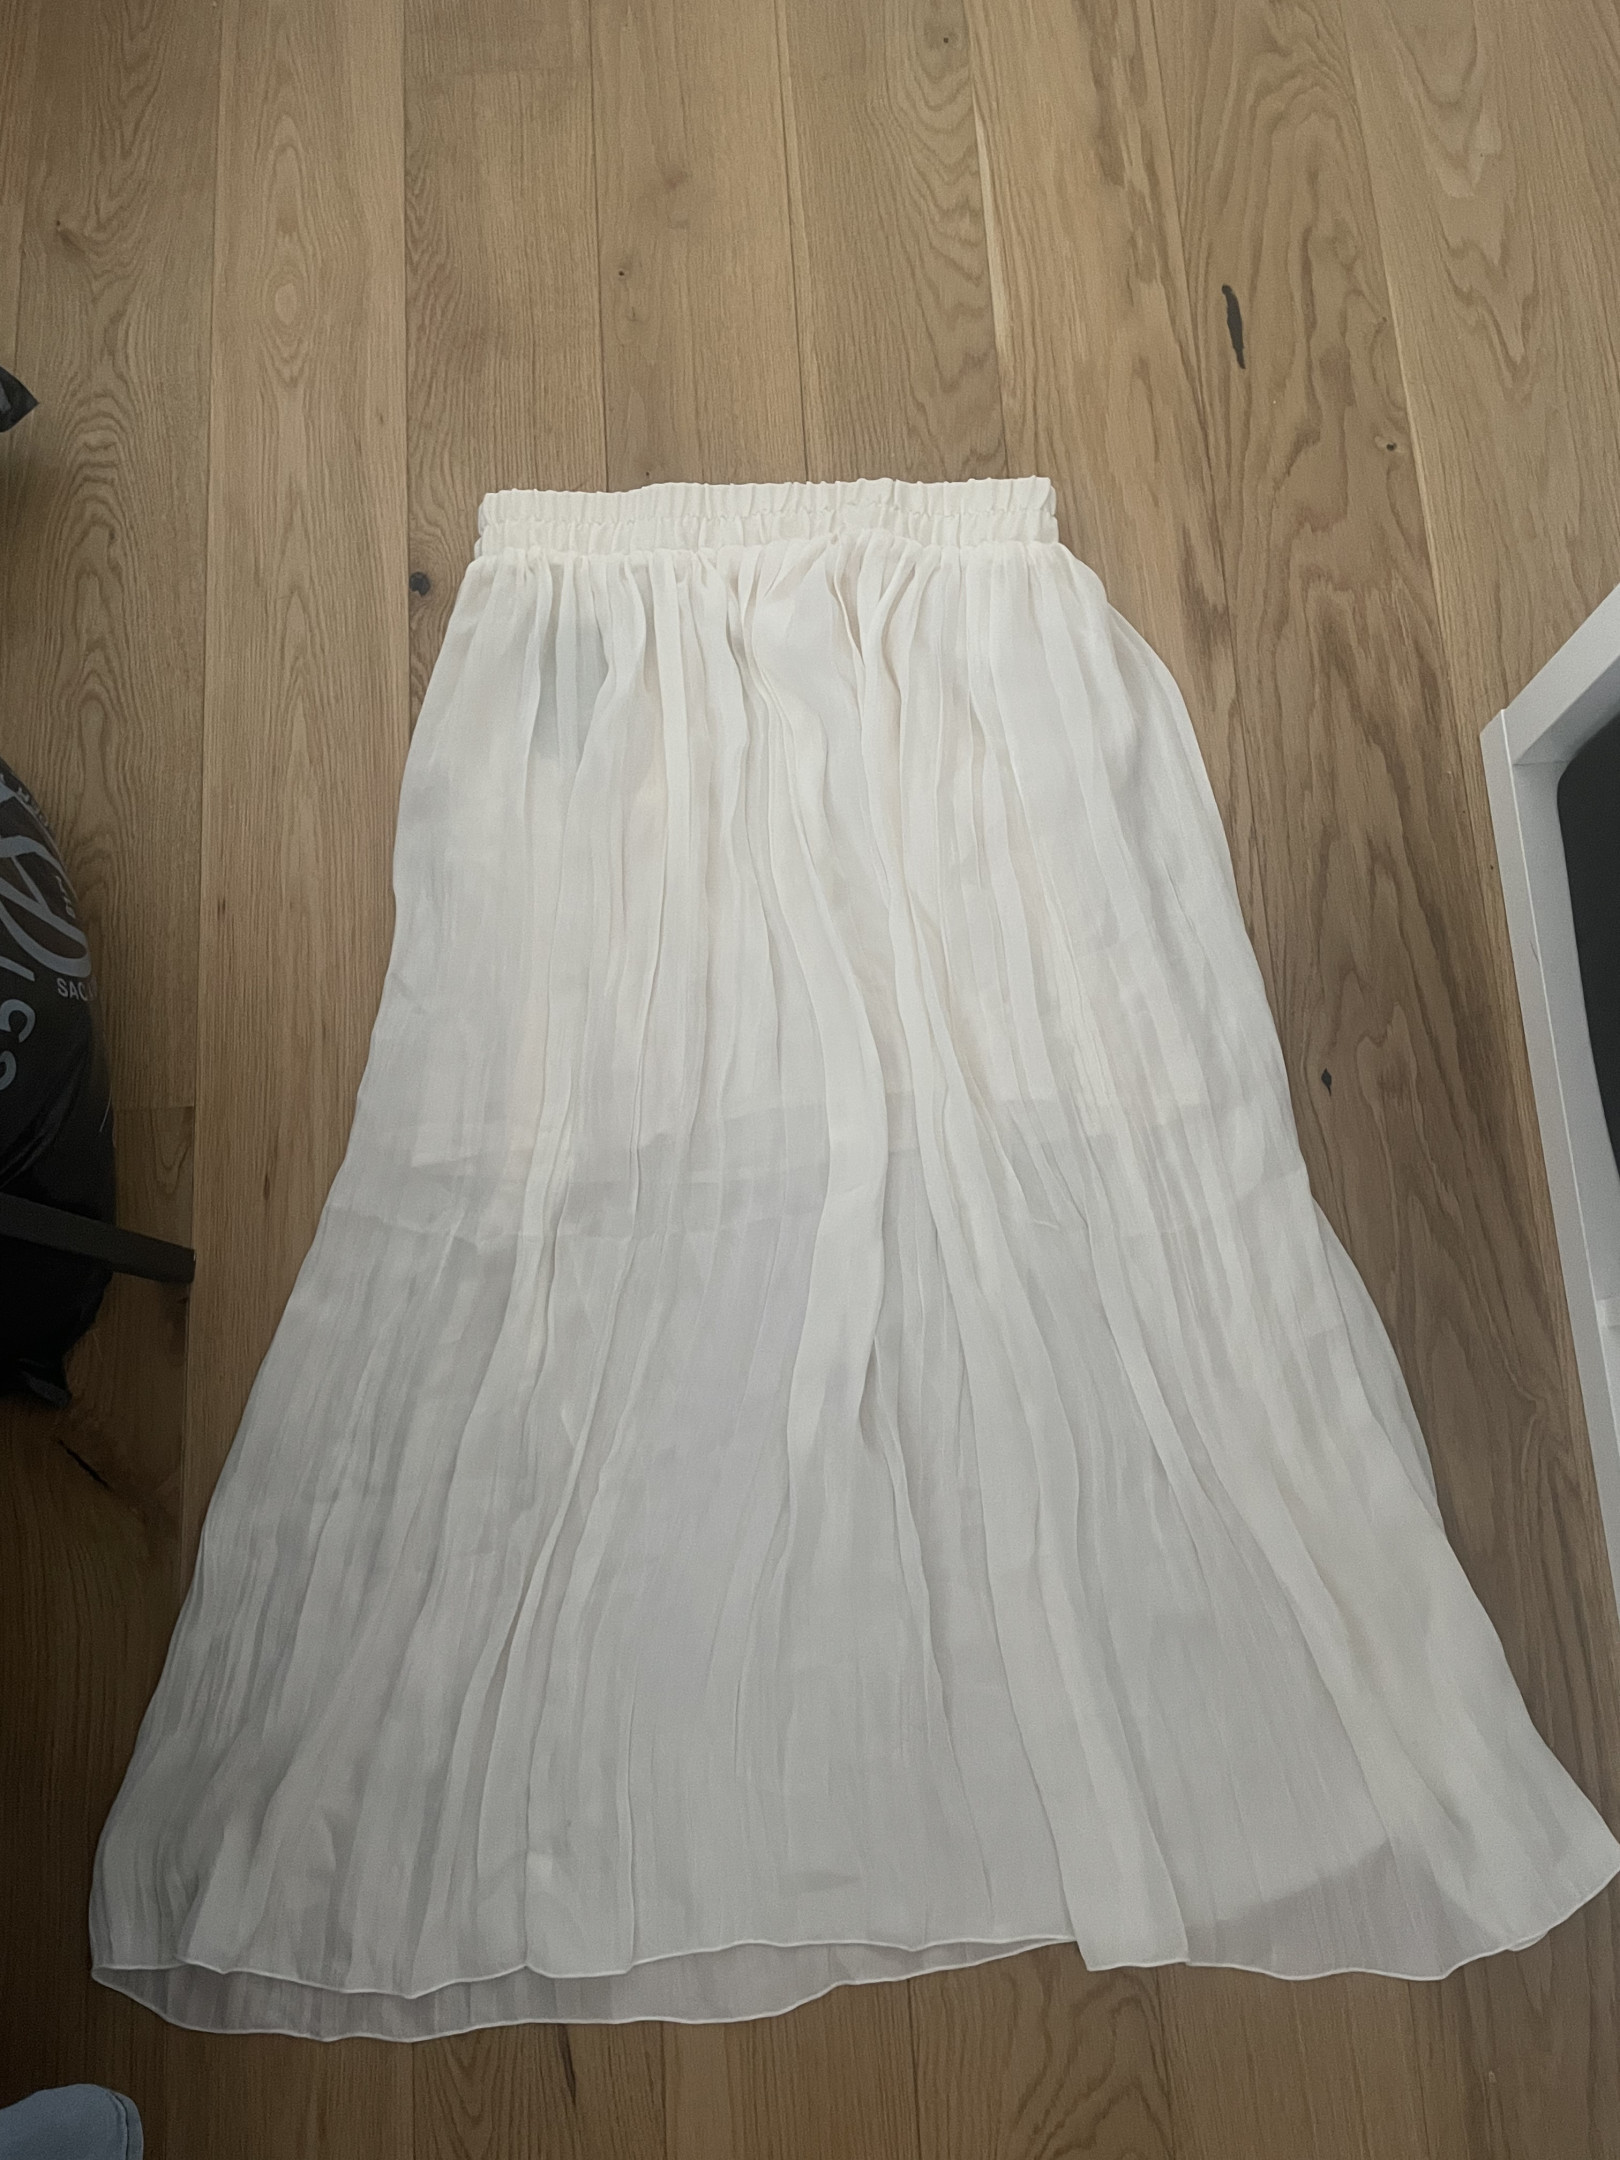 Long skirt, size M